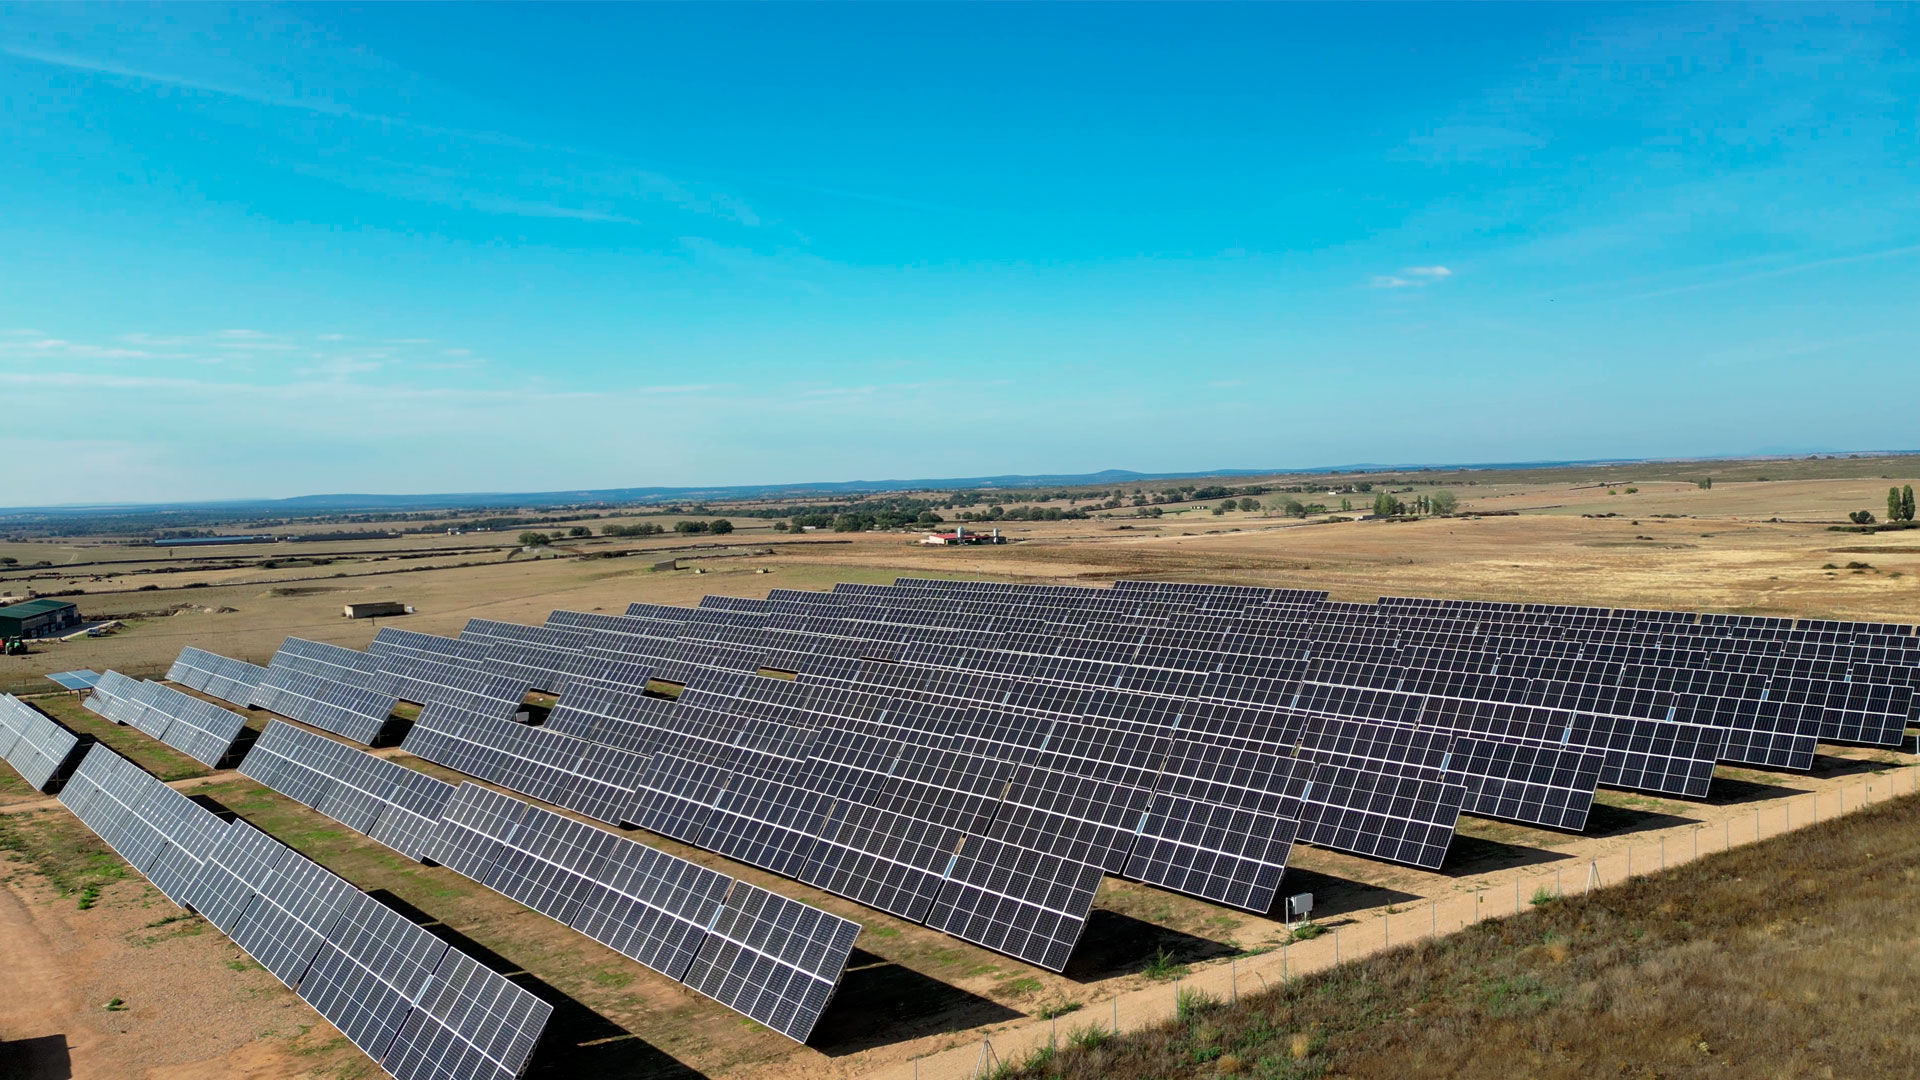 Instalación fotovoltaica de placas solares sobre suelo rural para generación de energía eléctrica.